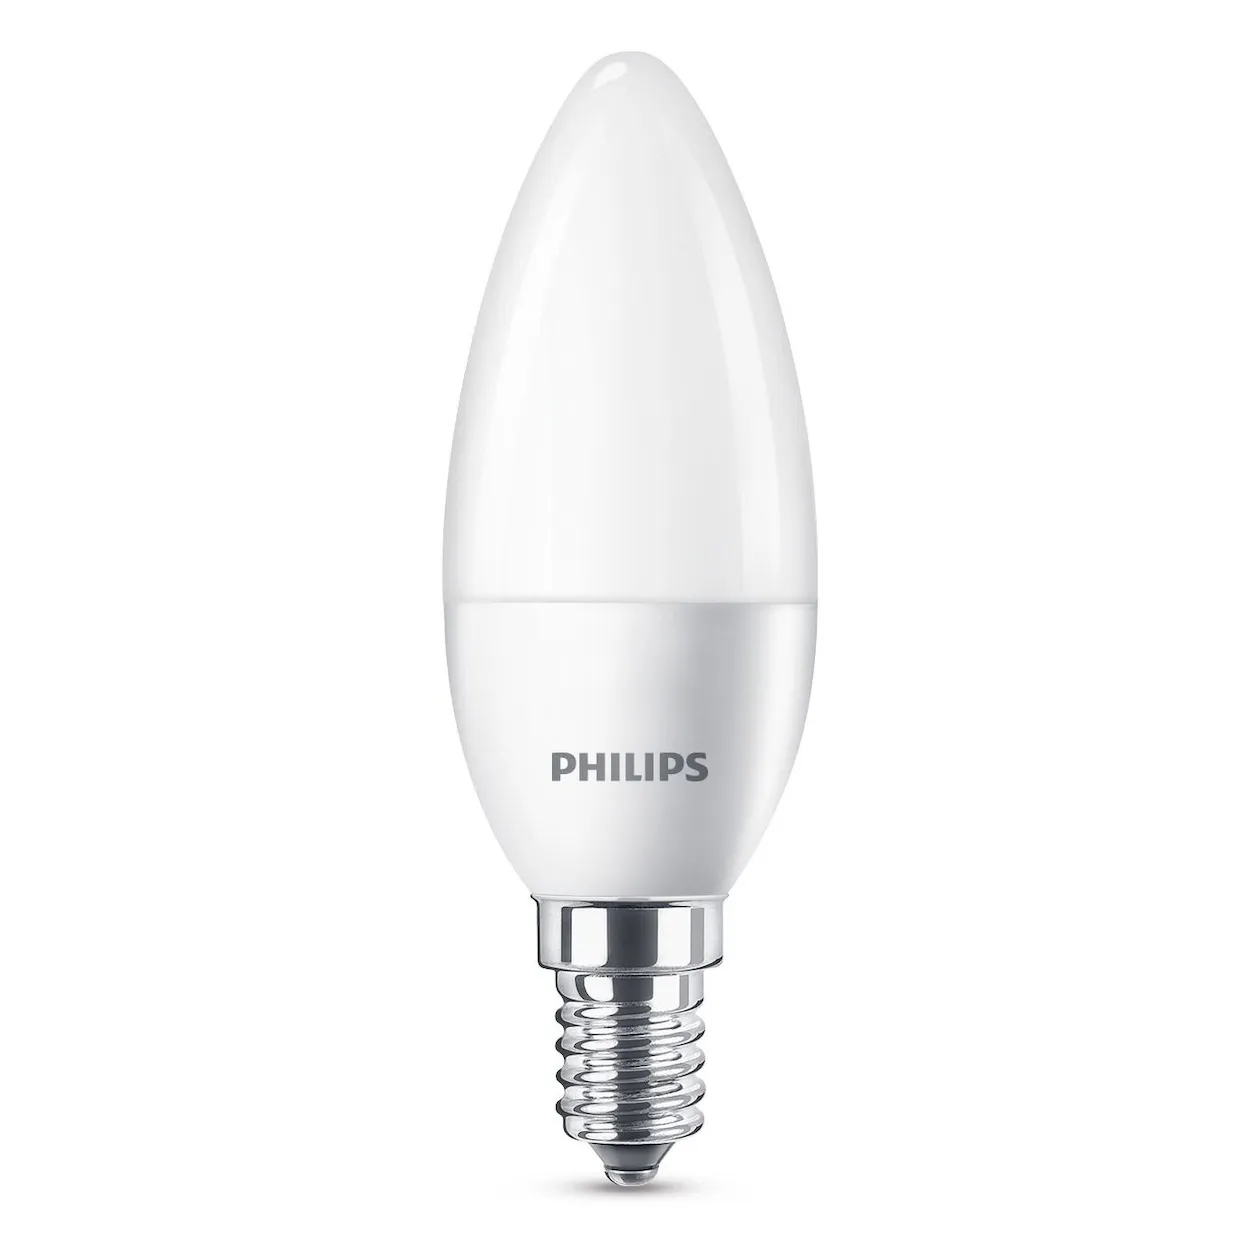 Philips LED lamp E4 4W 250Lm kaars mat 2 stuks